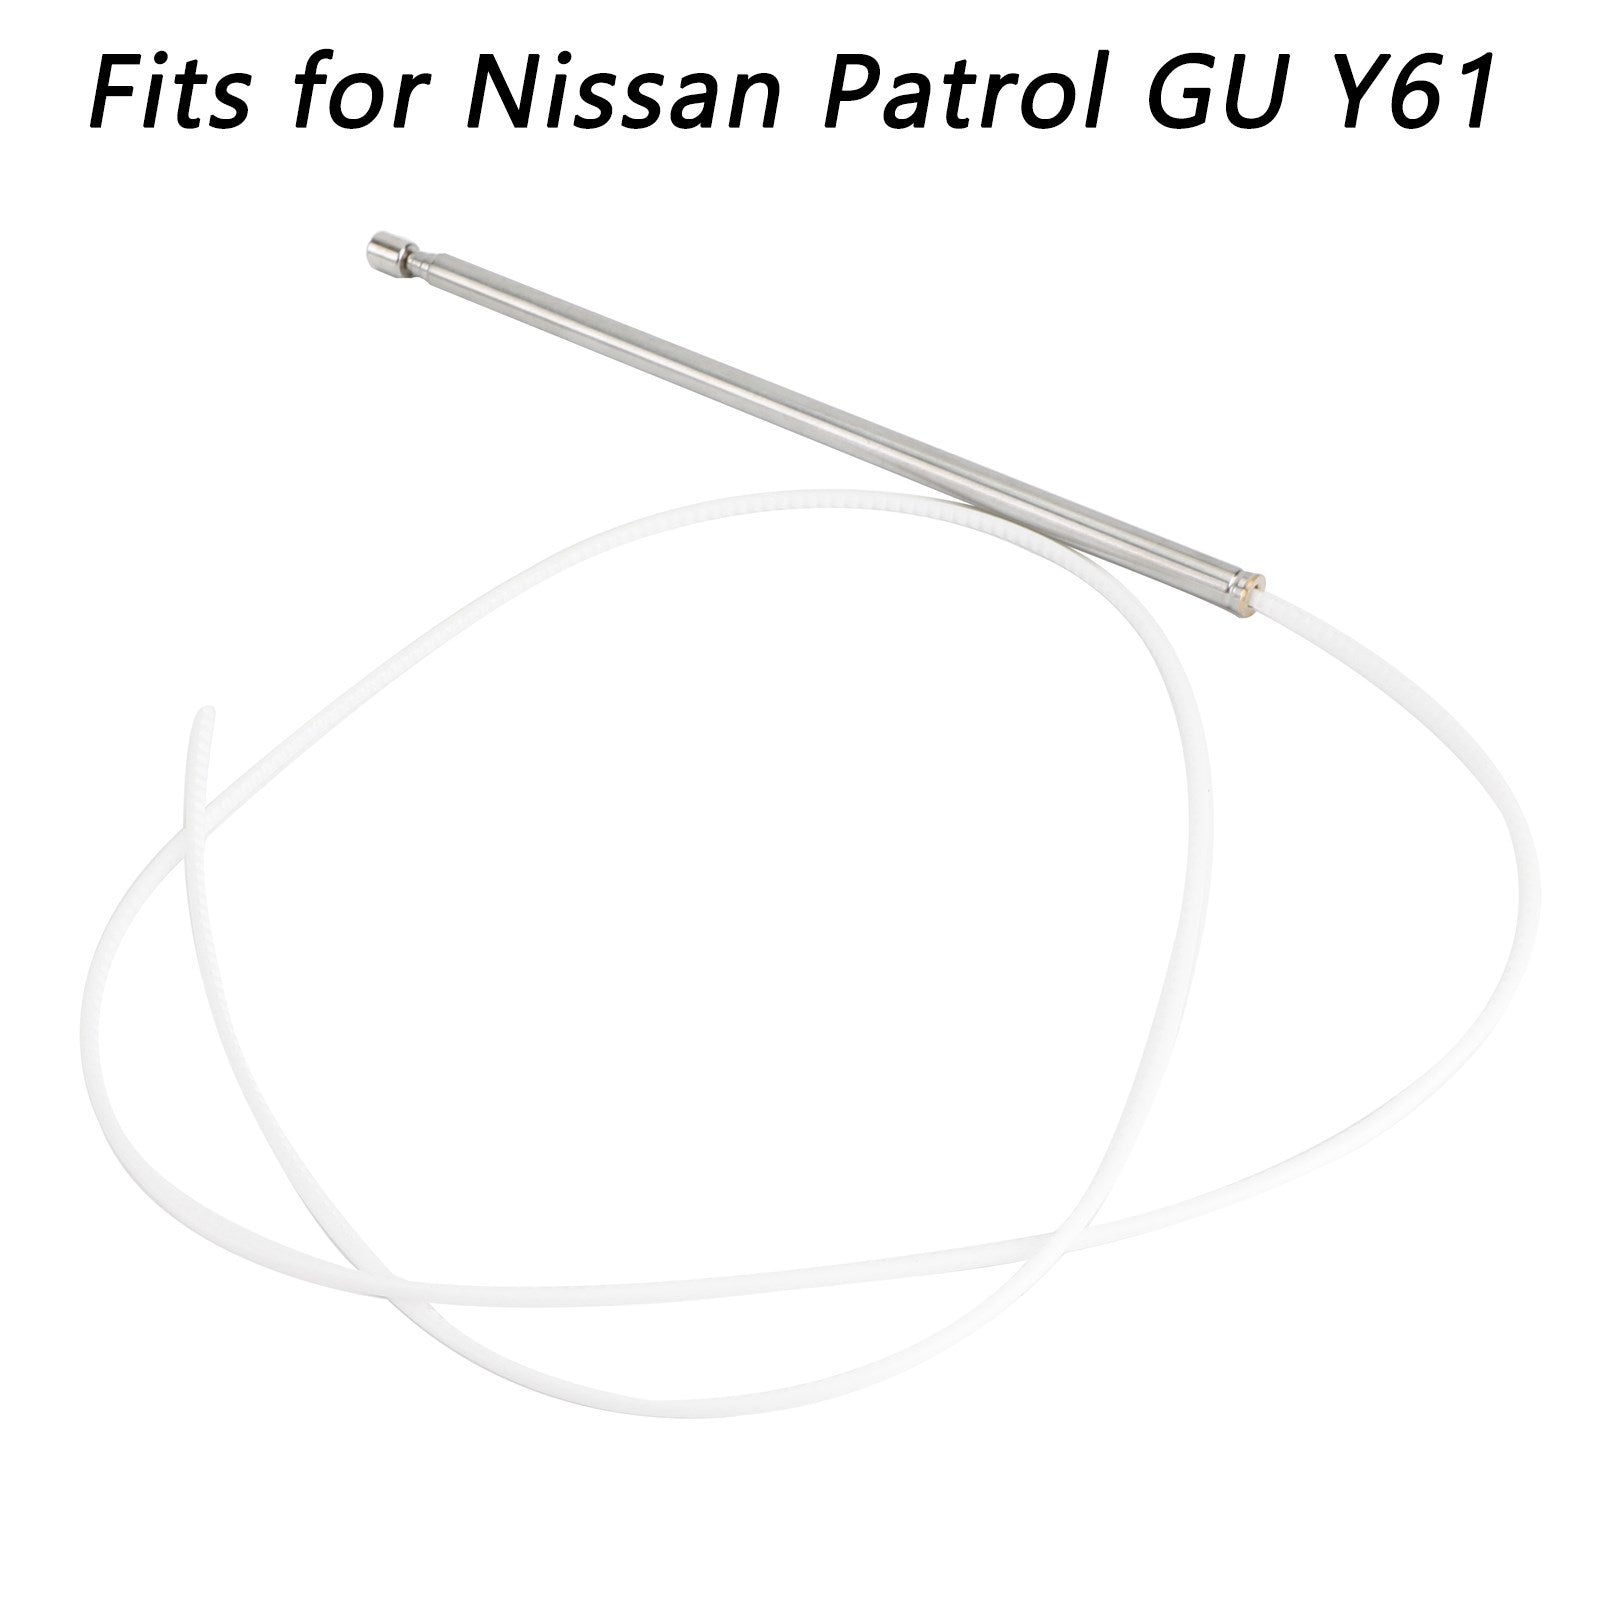 Mât d'antenne électrique FYE014012 pour Nissan Patrol GU Y61 générique